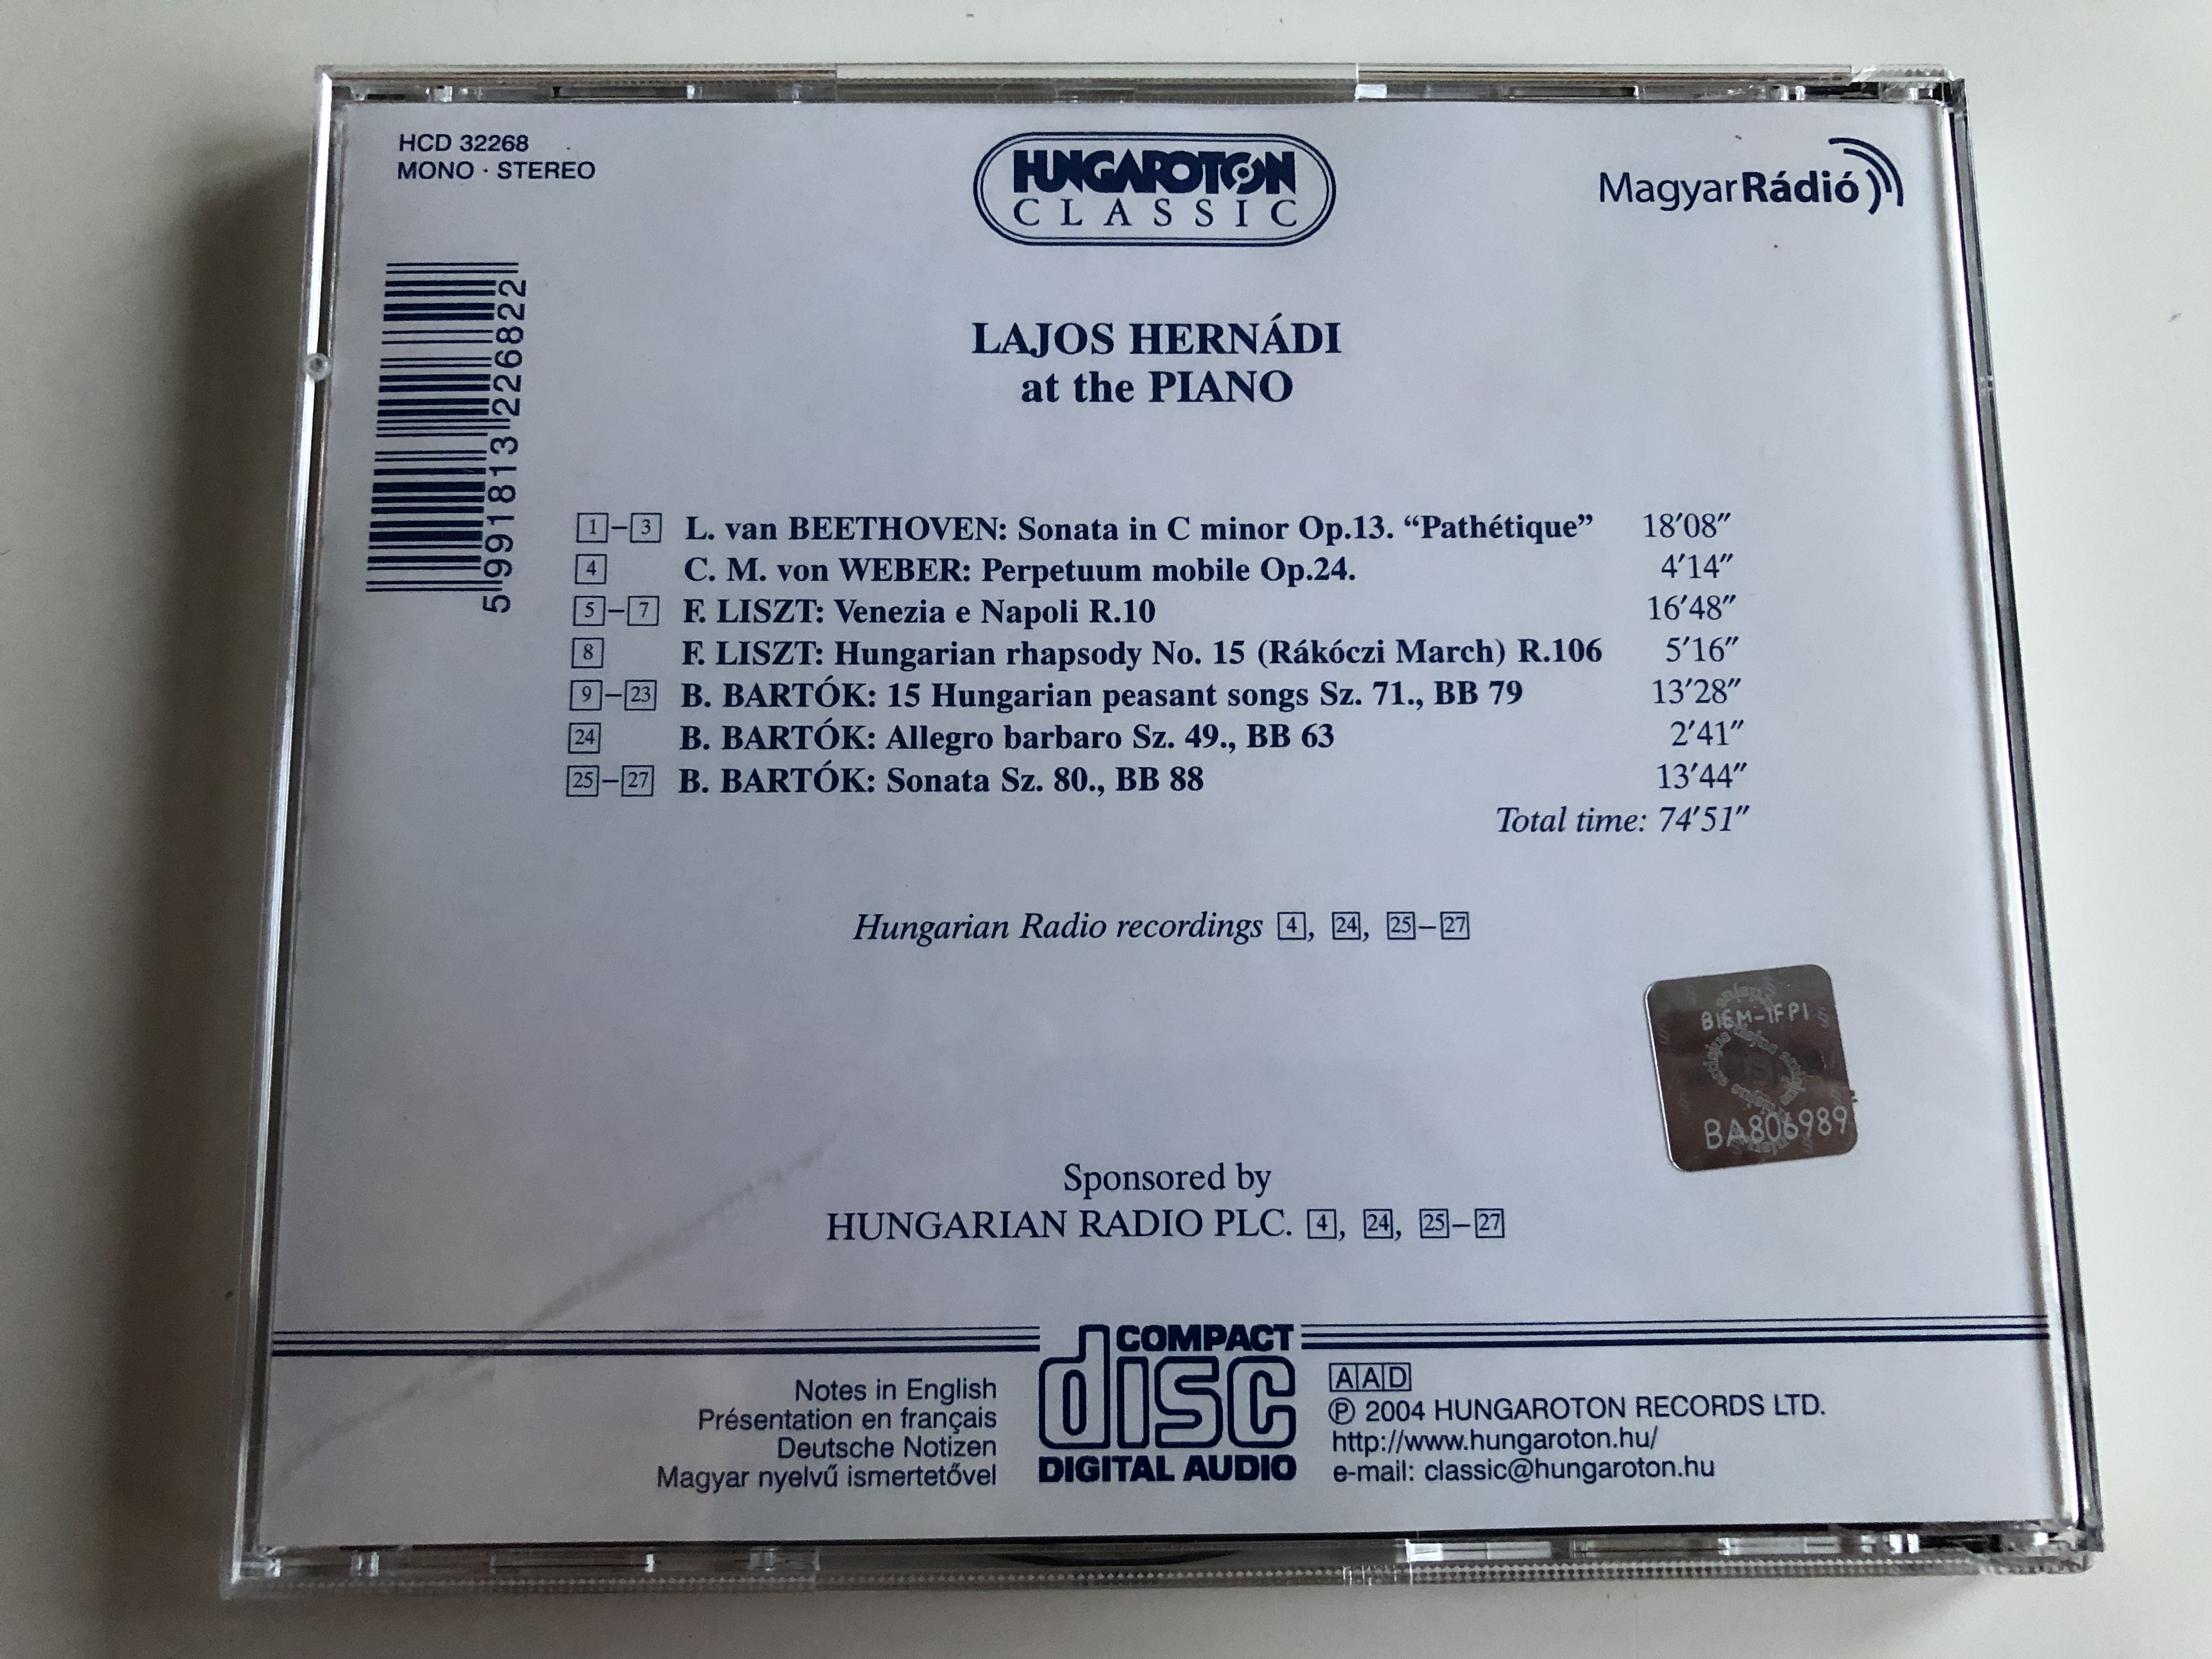 lajos-hern-di-at-the-piano-audio-cd-2004-hugaroton-classic-hungarian-radio-recordings-hcd32268-6-.jpg